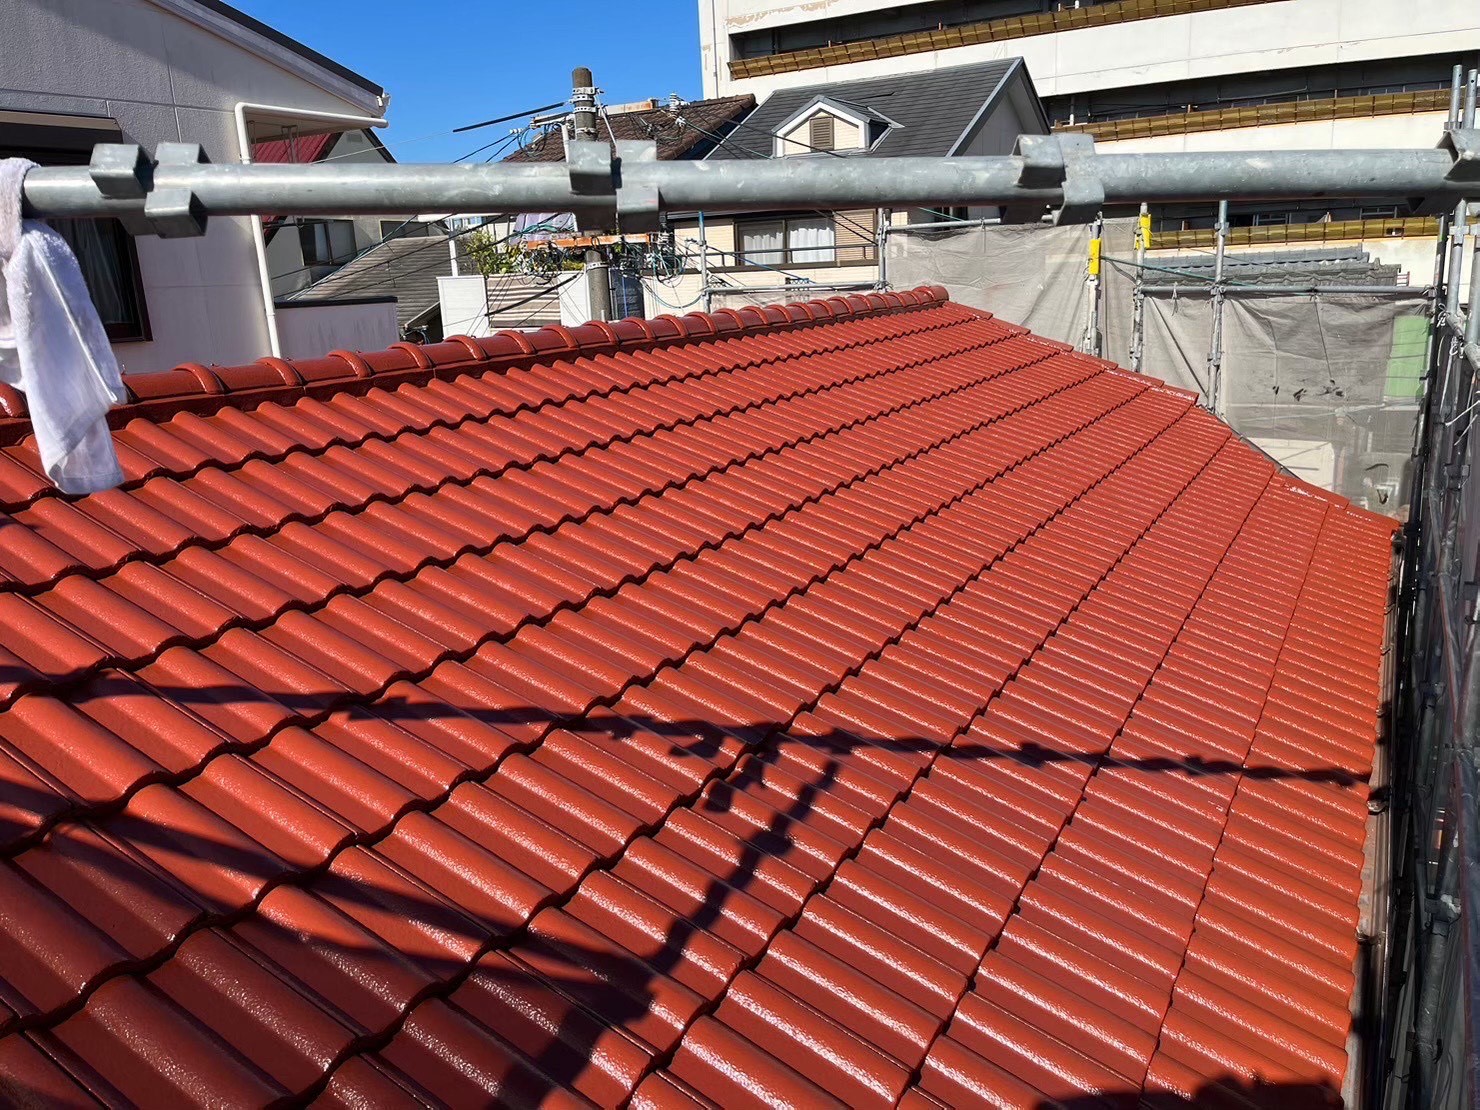 施工後です。
屋根塗料は、オリエンタル塗料/マイティシリコンで塗装させて頂きました。
オリエンタル塗料は、屋根の塗料に特化しています。
屋根塗装は、オリエンタル塗料が一番良いですね。